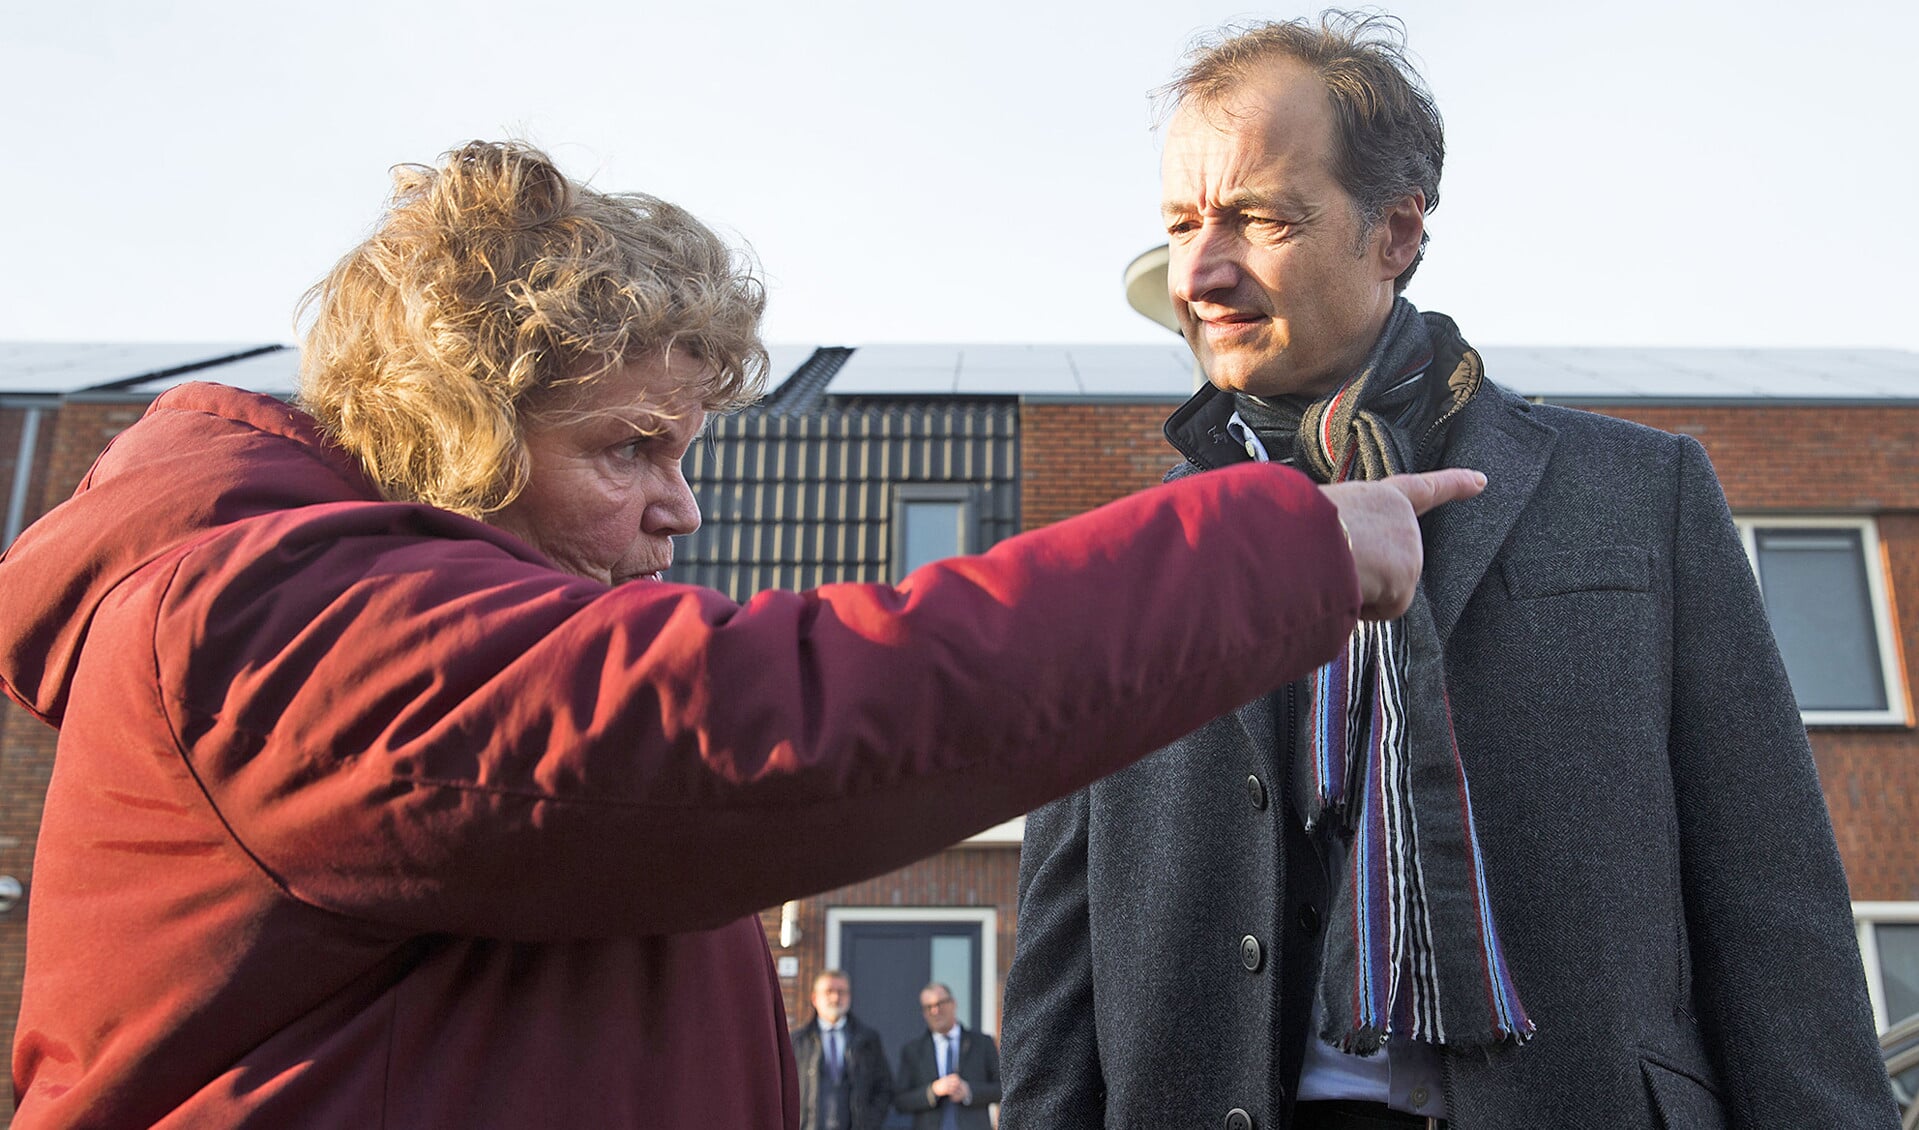 Op 22 november bezocht de nieuwe minister Eric Wiebes het aardbevingsgebied in Groningen, waar hij met bestuurders en bewoners sprak.